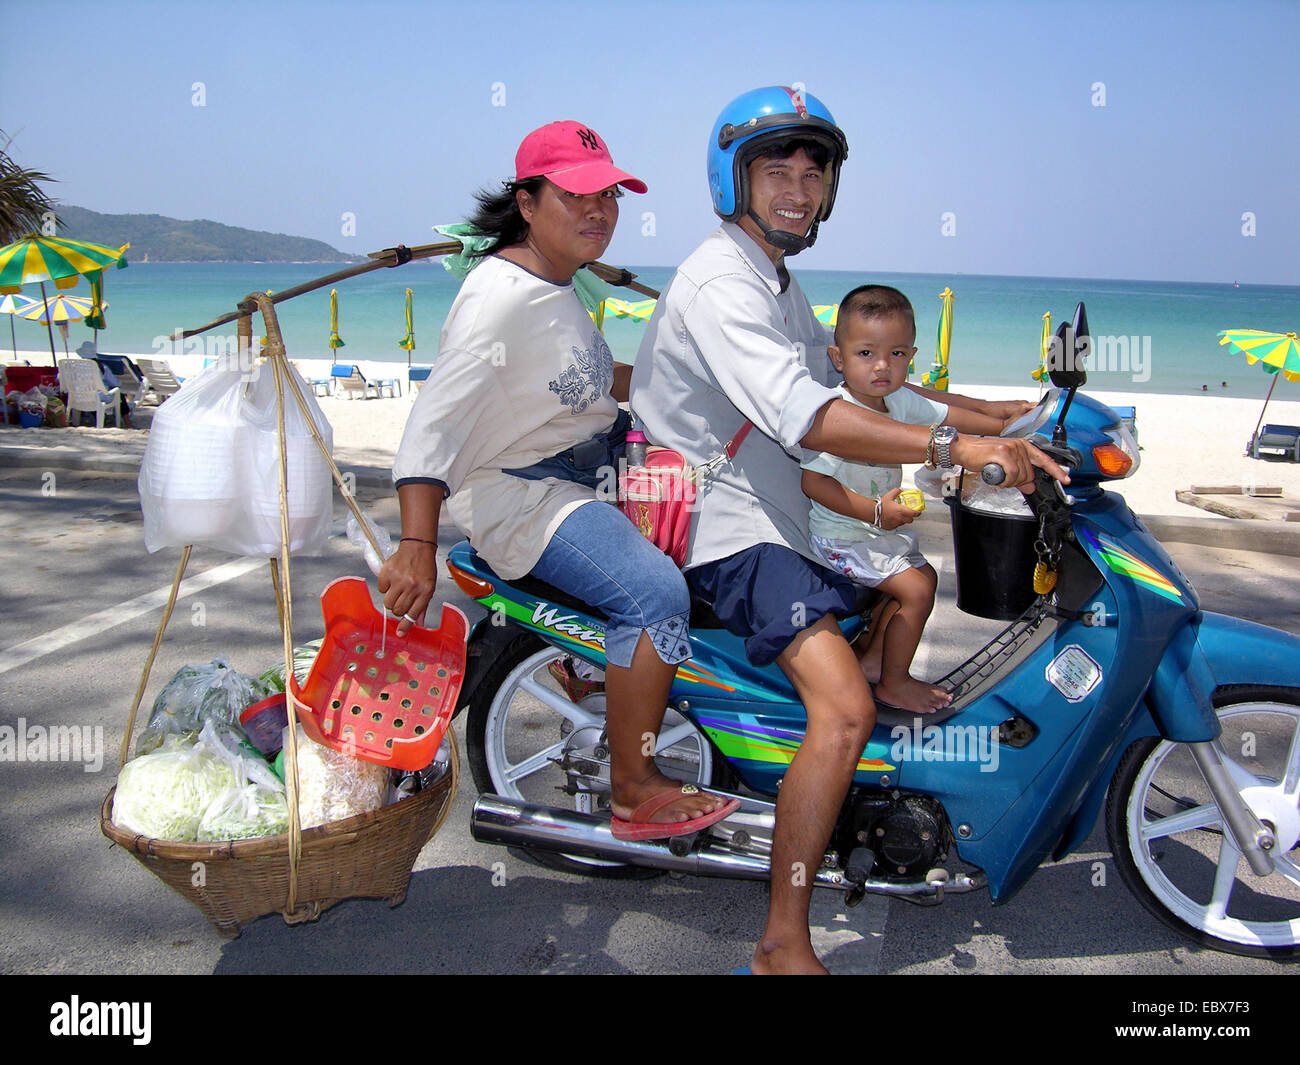 Familia tailandesa en motocicleta, Tailandia Foto de stock